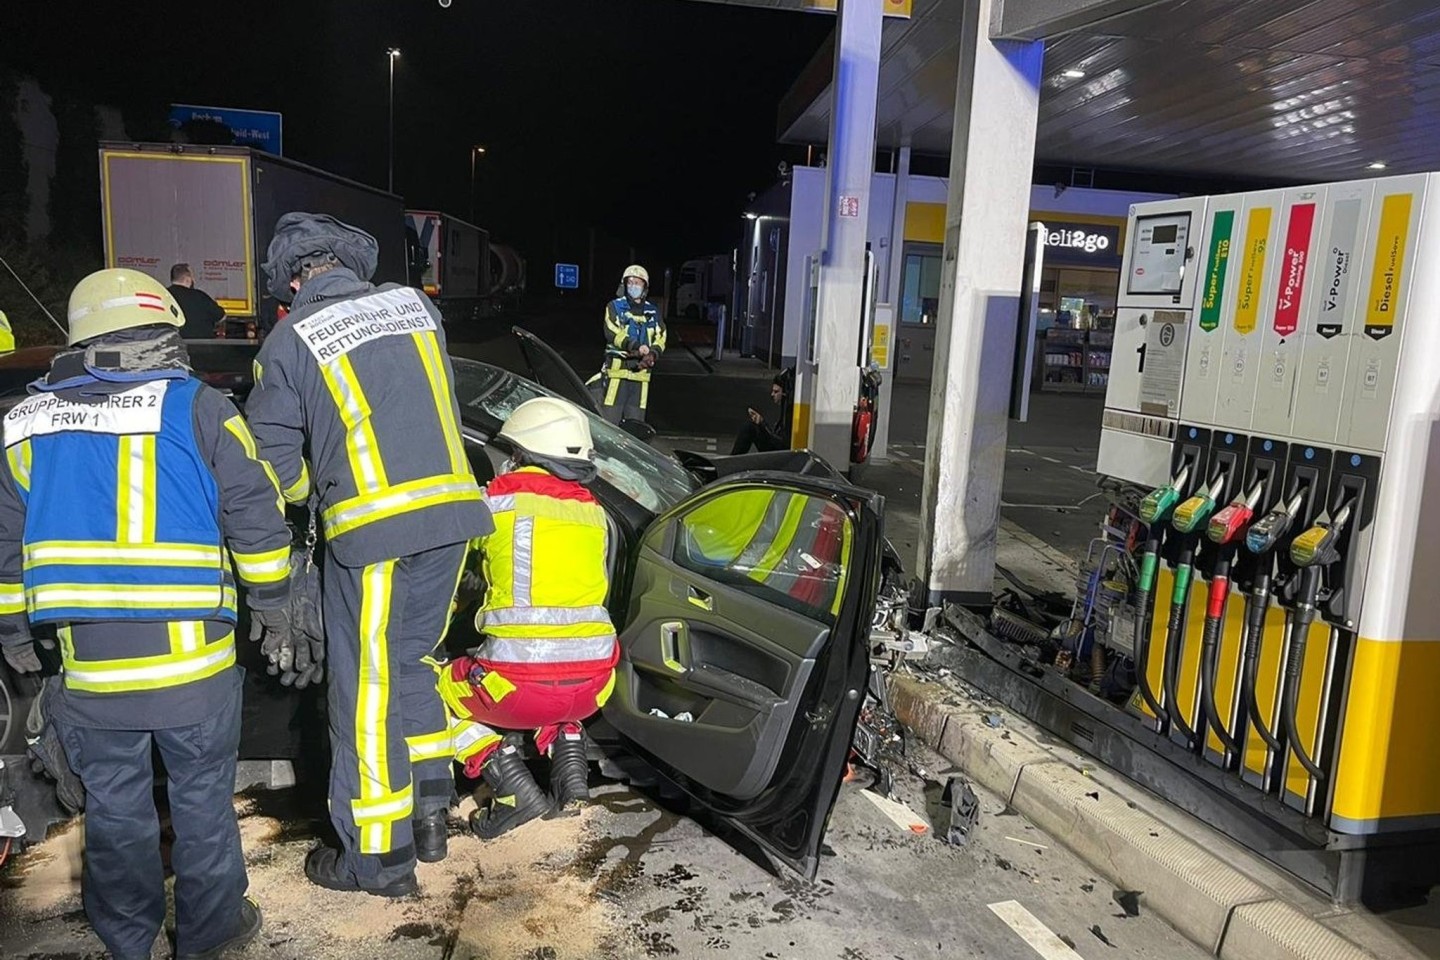 Einsatzkräfte bei der Arbeit: Auf einem Tankstellengelände an der A40 bei Bochum ist am frühen Sonntagmorgen ein Auto gegen eine Tanksäule geprallt. Die vier Insassen des Wagens seien sc...